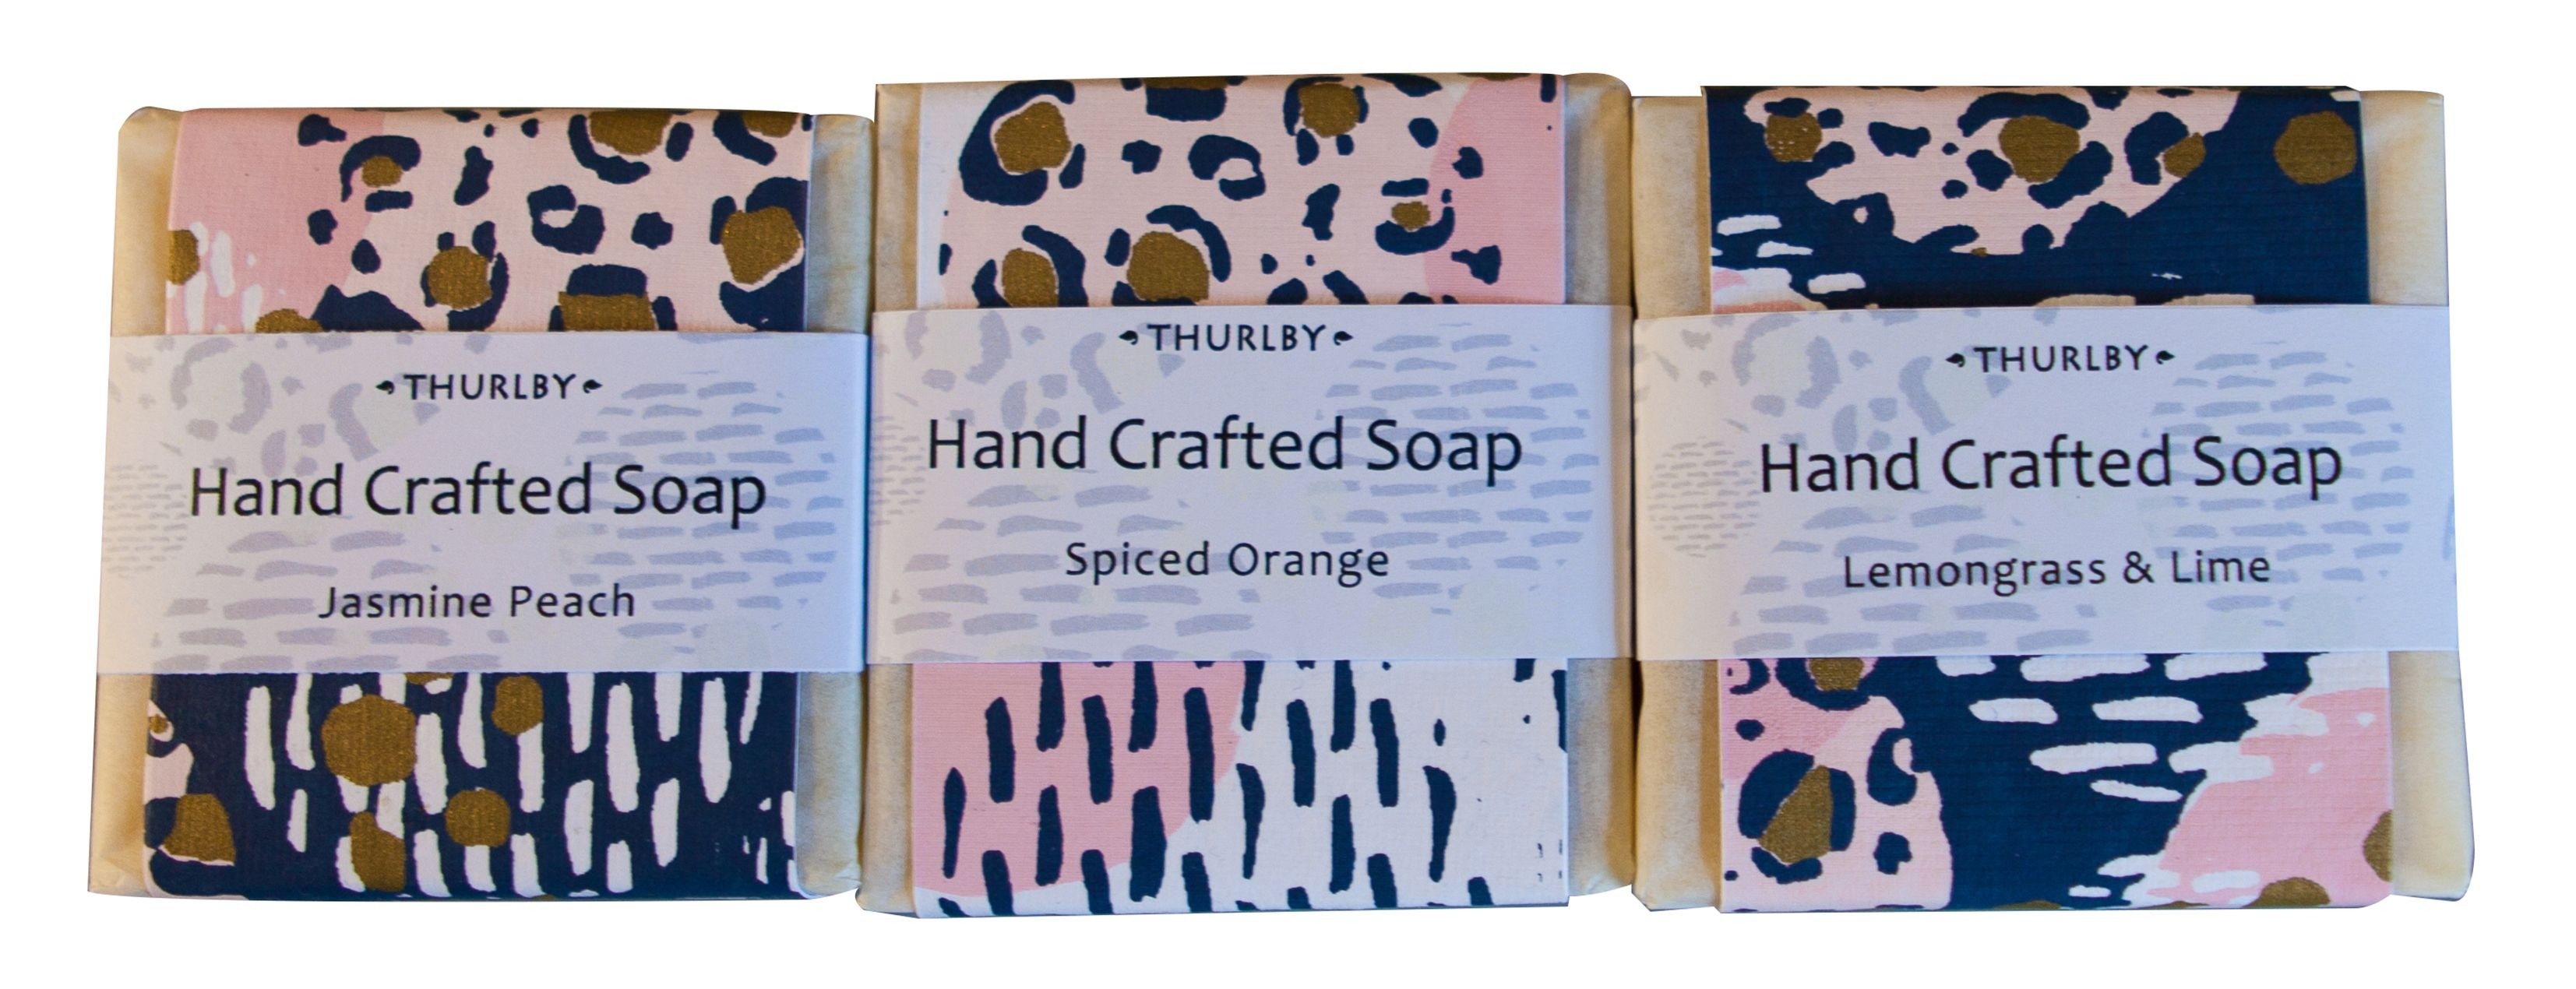 Thurlby Herb soap - lemon & lime